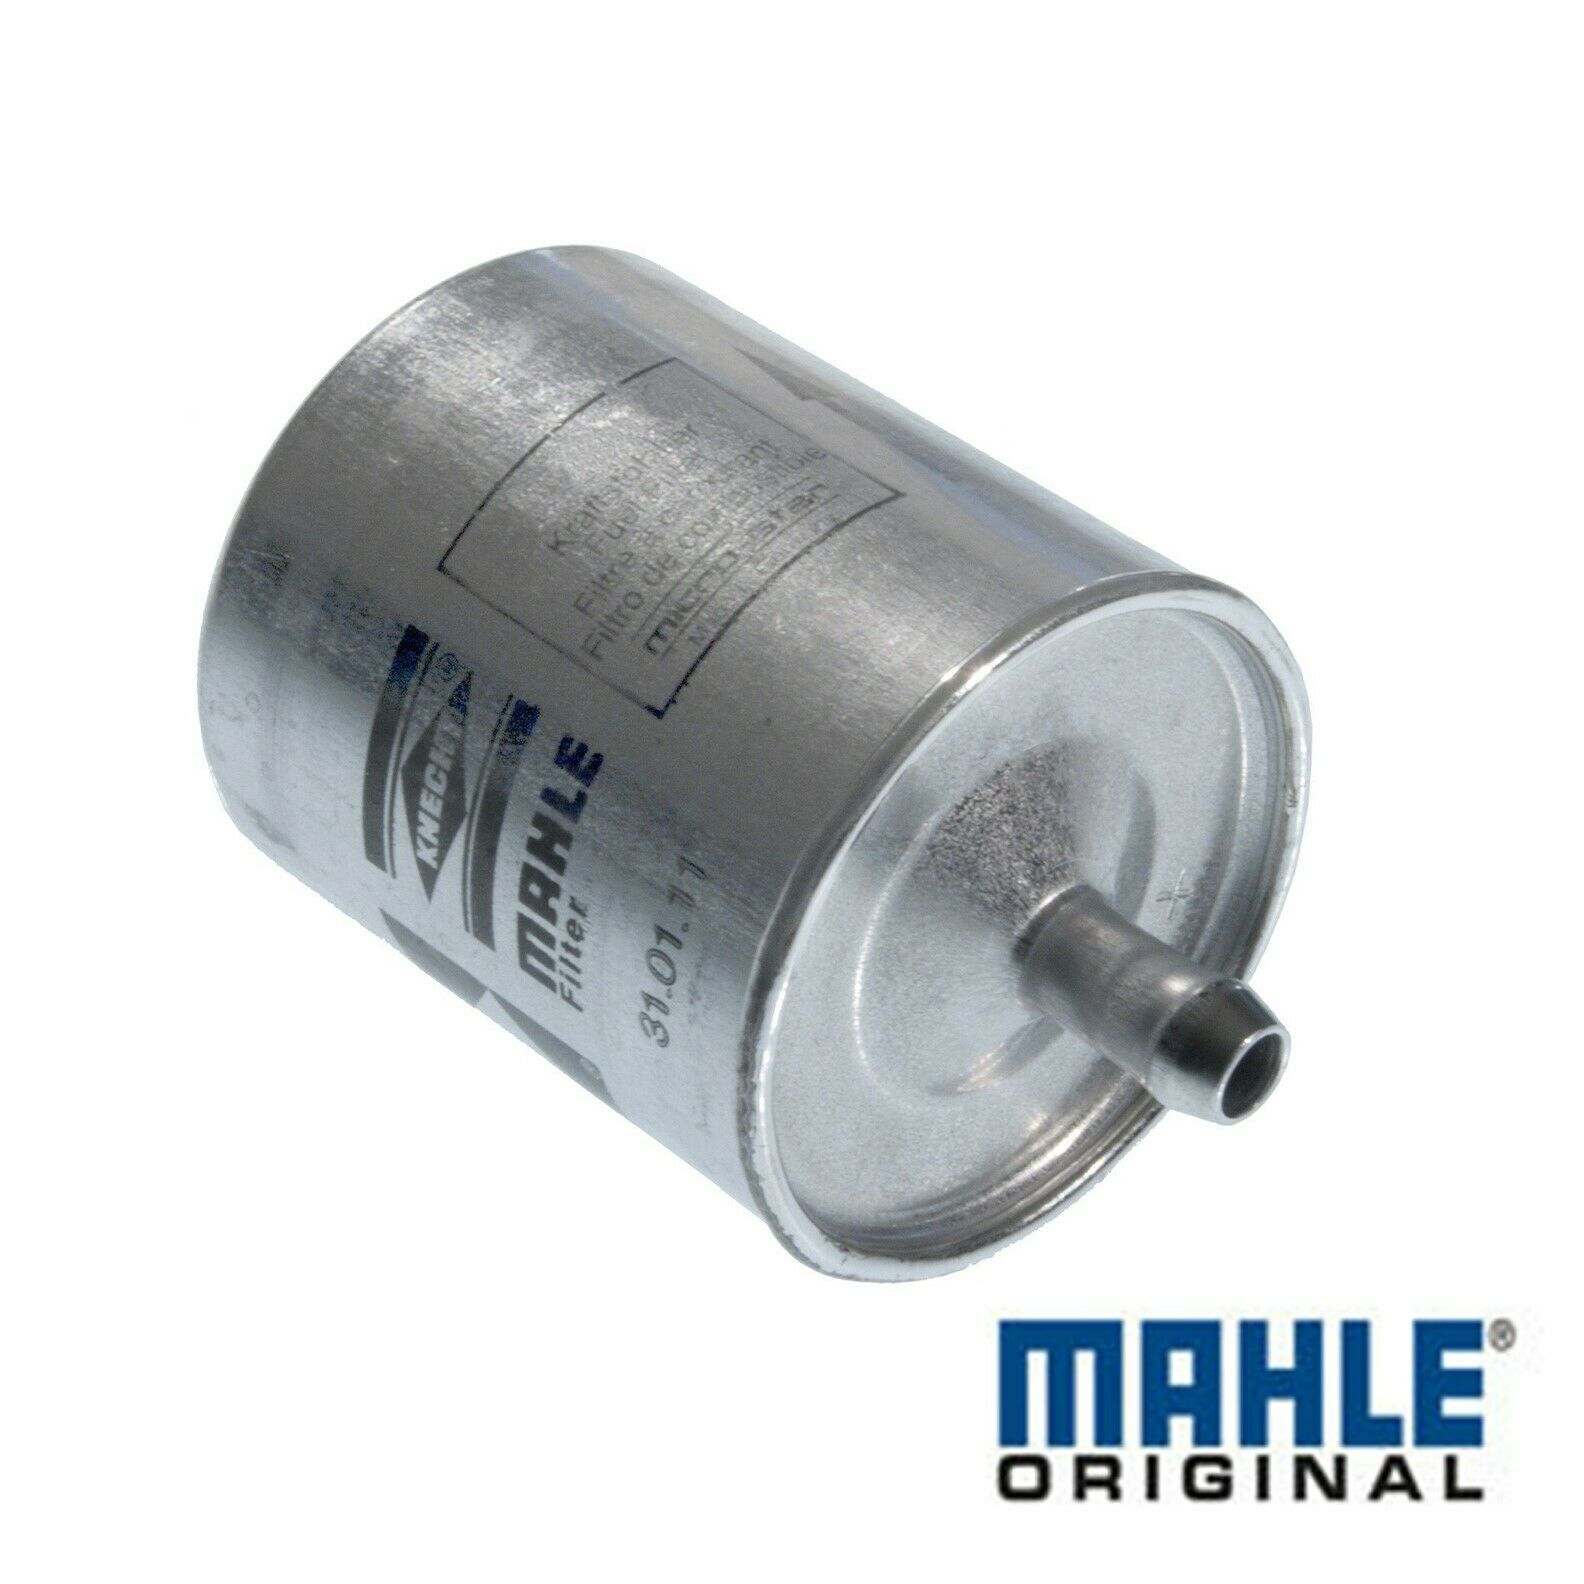 Genuine Mahle Efi Fuel Filter 1988-2016 Bmw K1 K75 R/k1100 R/k1200 #13322305766